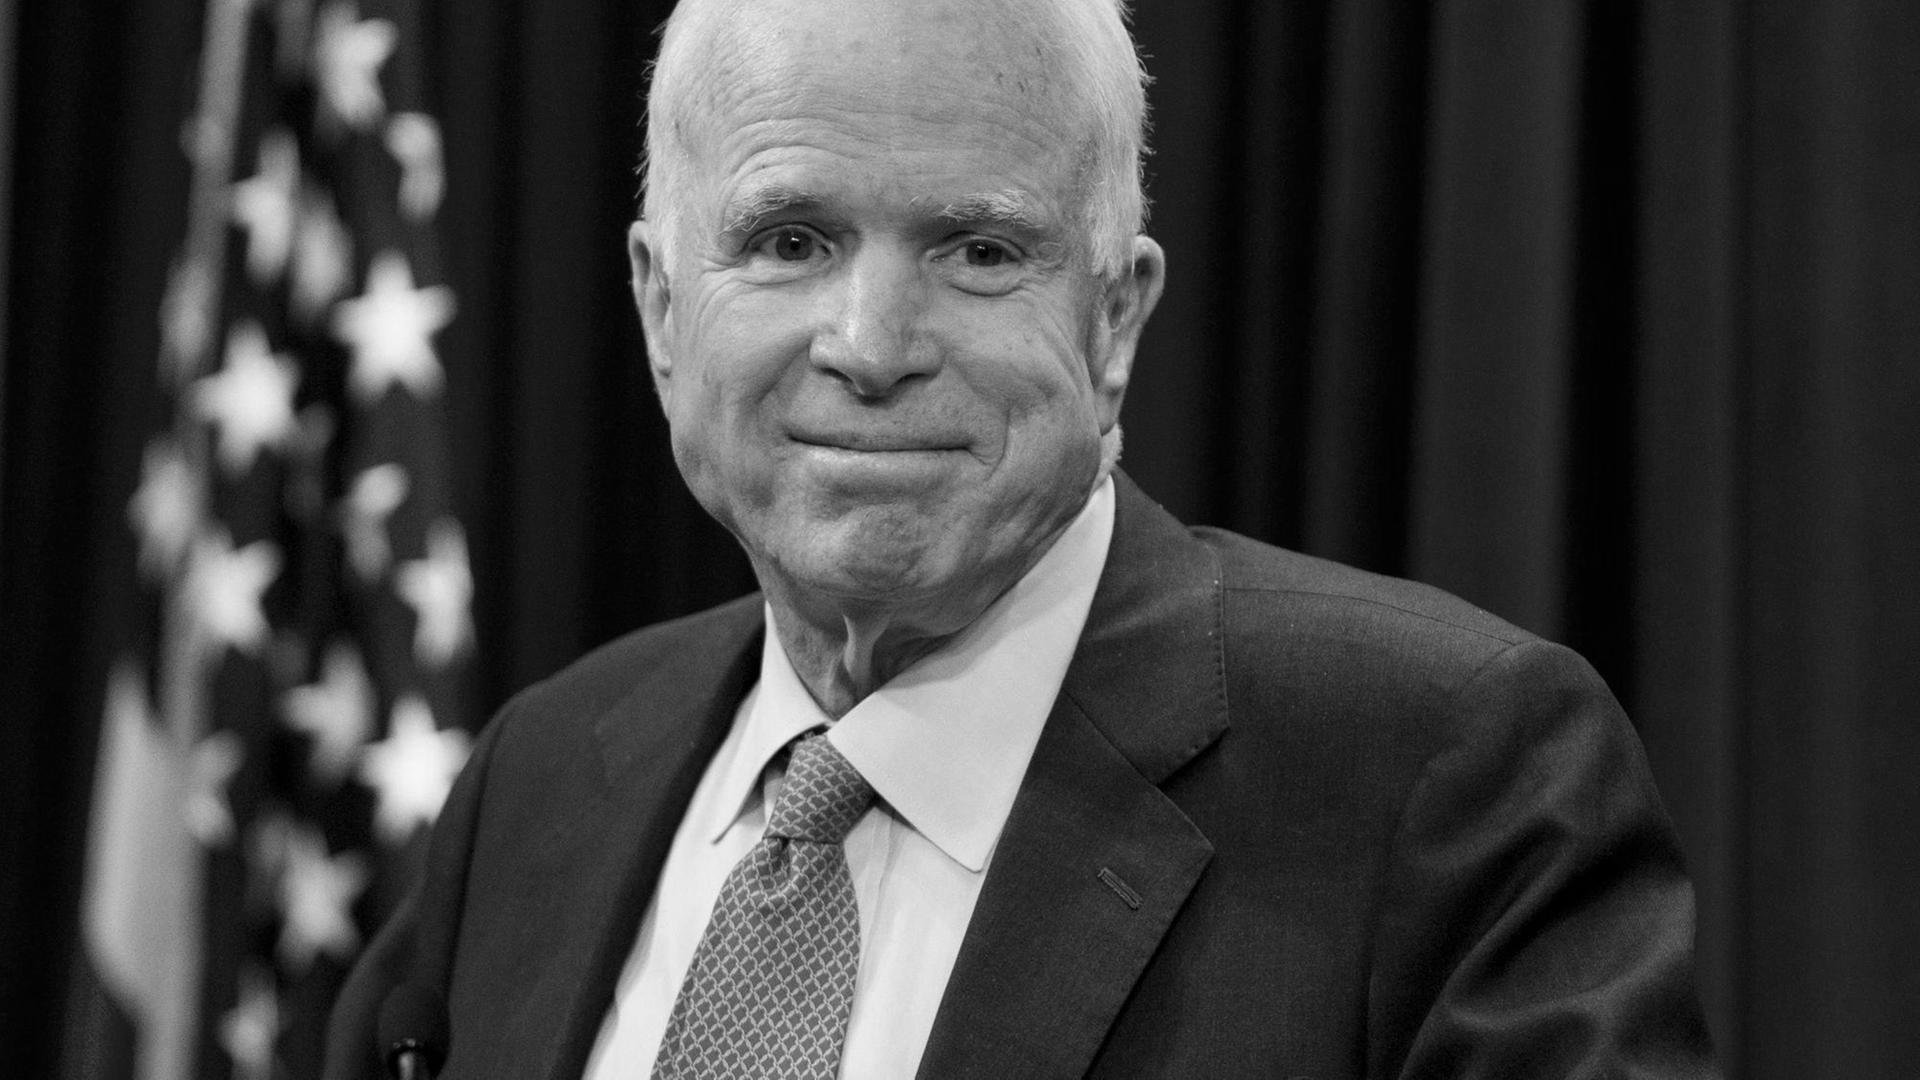 John McCain war in dem Land USA ein sehr bekannter Politiker.